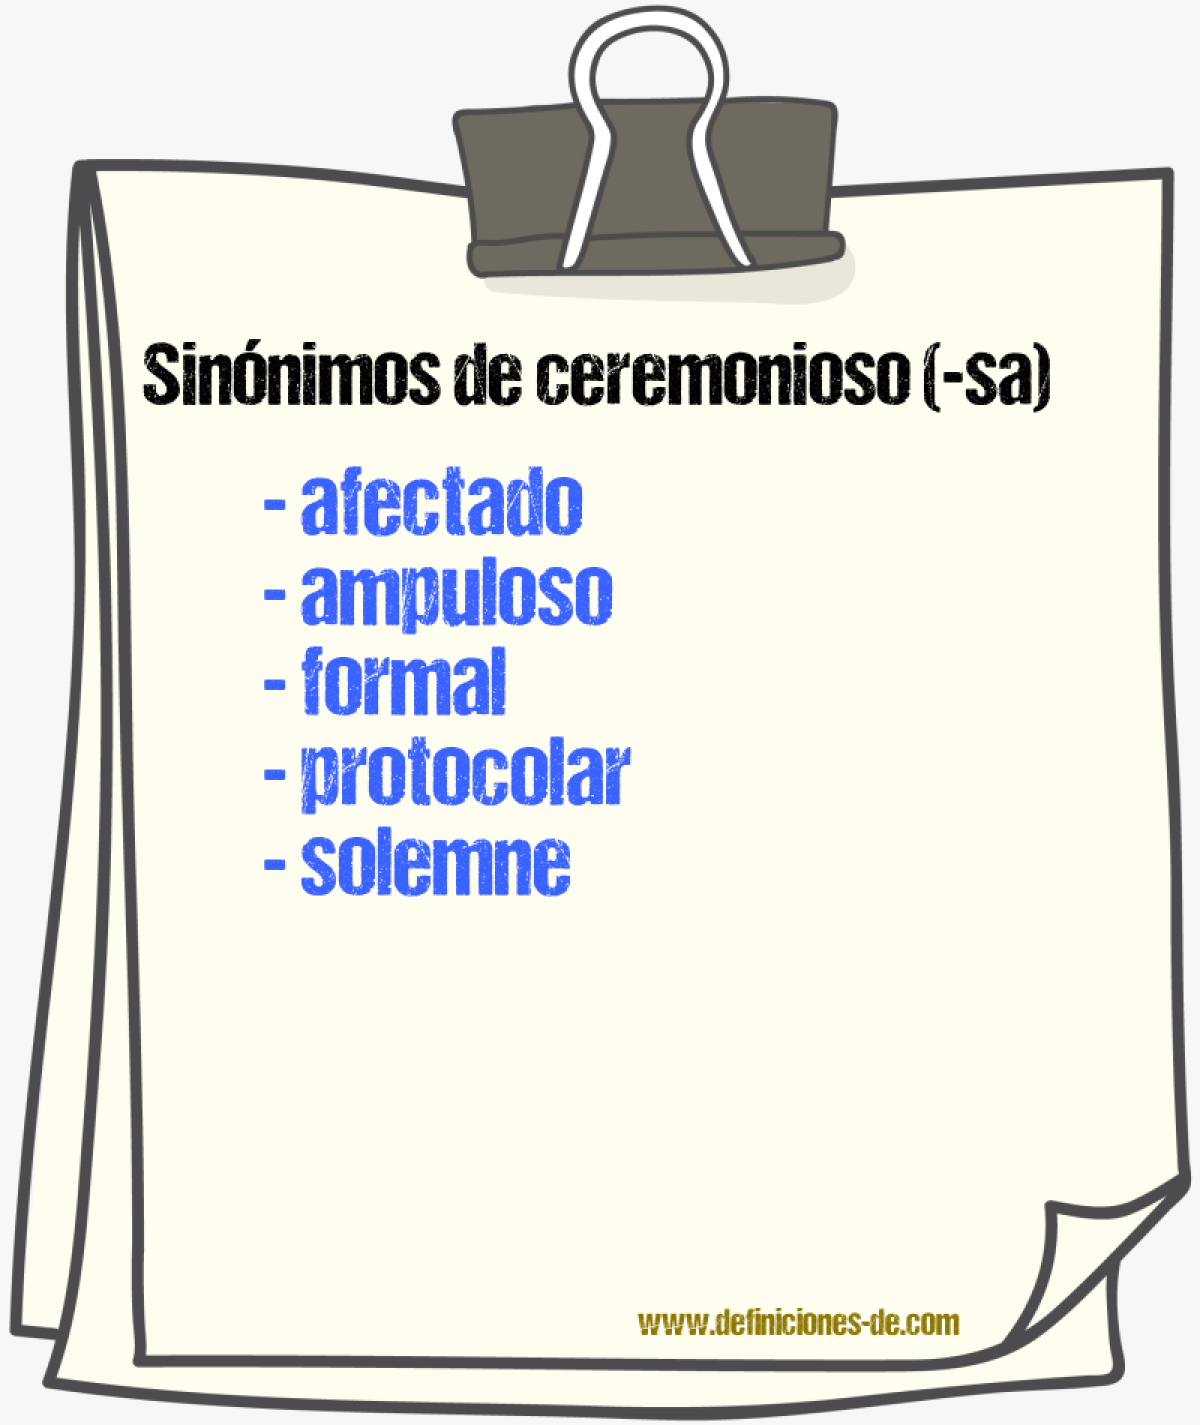 Sinónimos de ceremonioso